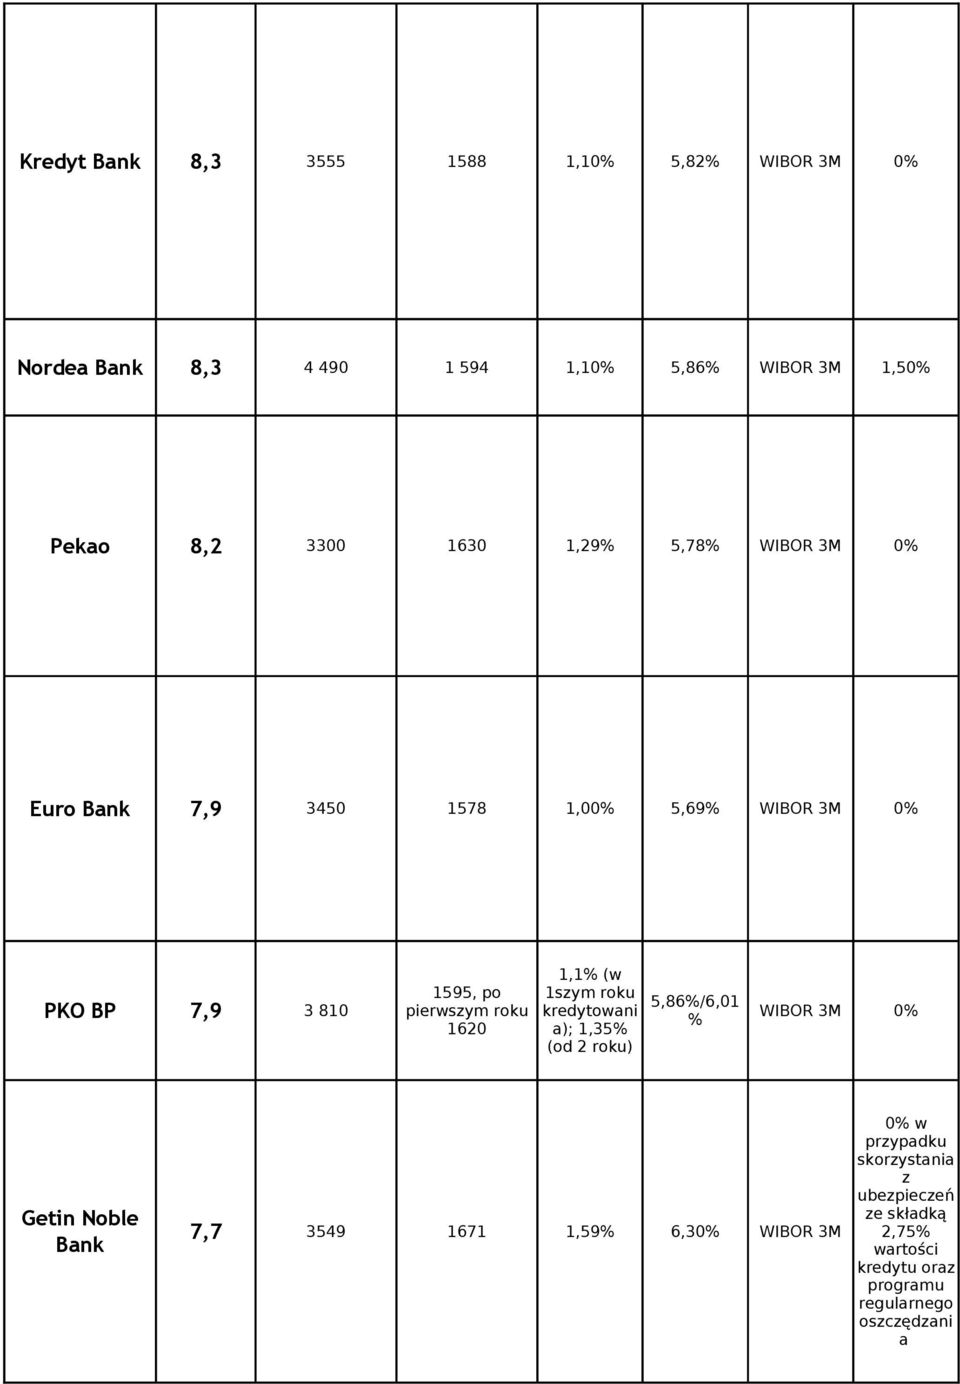 kredytowani WIBOR 3M 0% 1620 1,1% (w 1szym roku a); 1,35% (od 2 roku) 5,86%/6,01 % Getin Noble Bank 7,7 3549 1671 1,59%